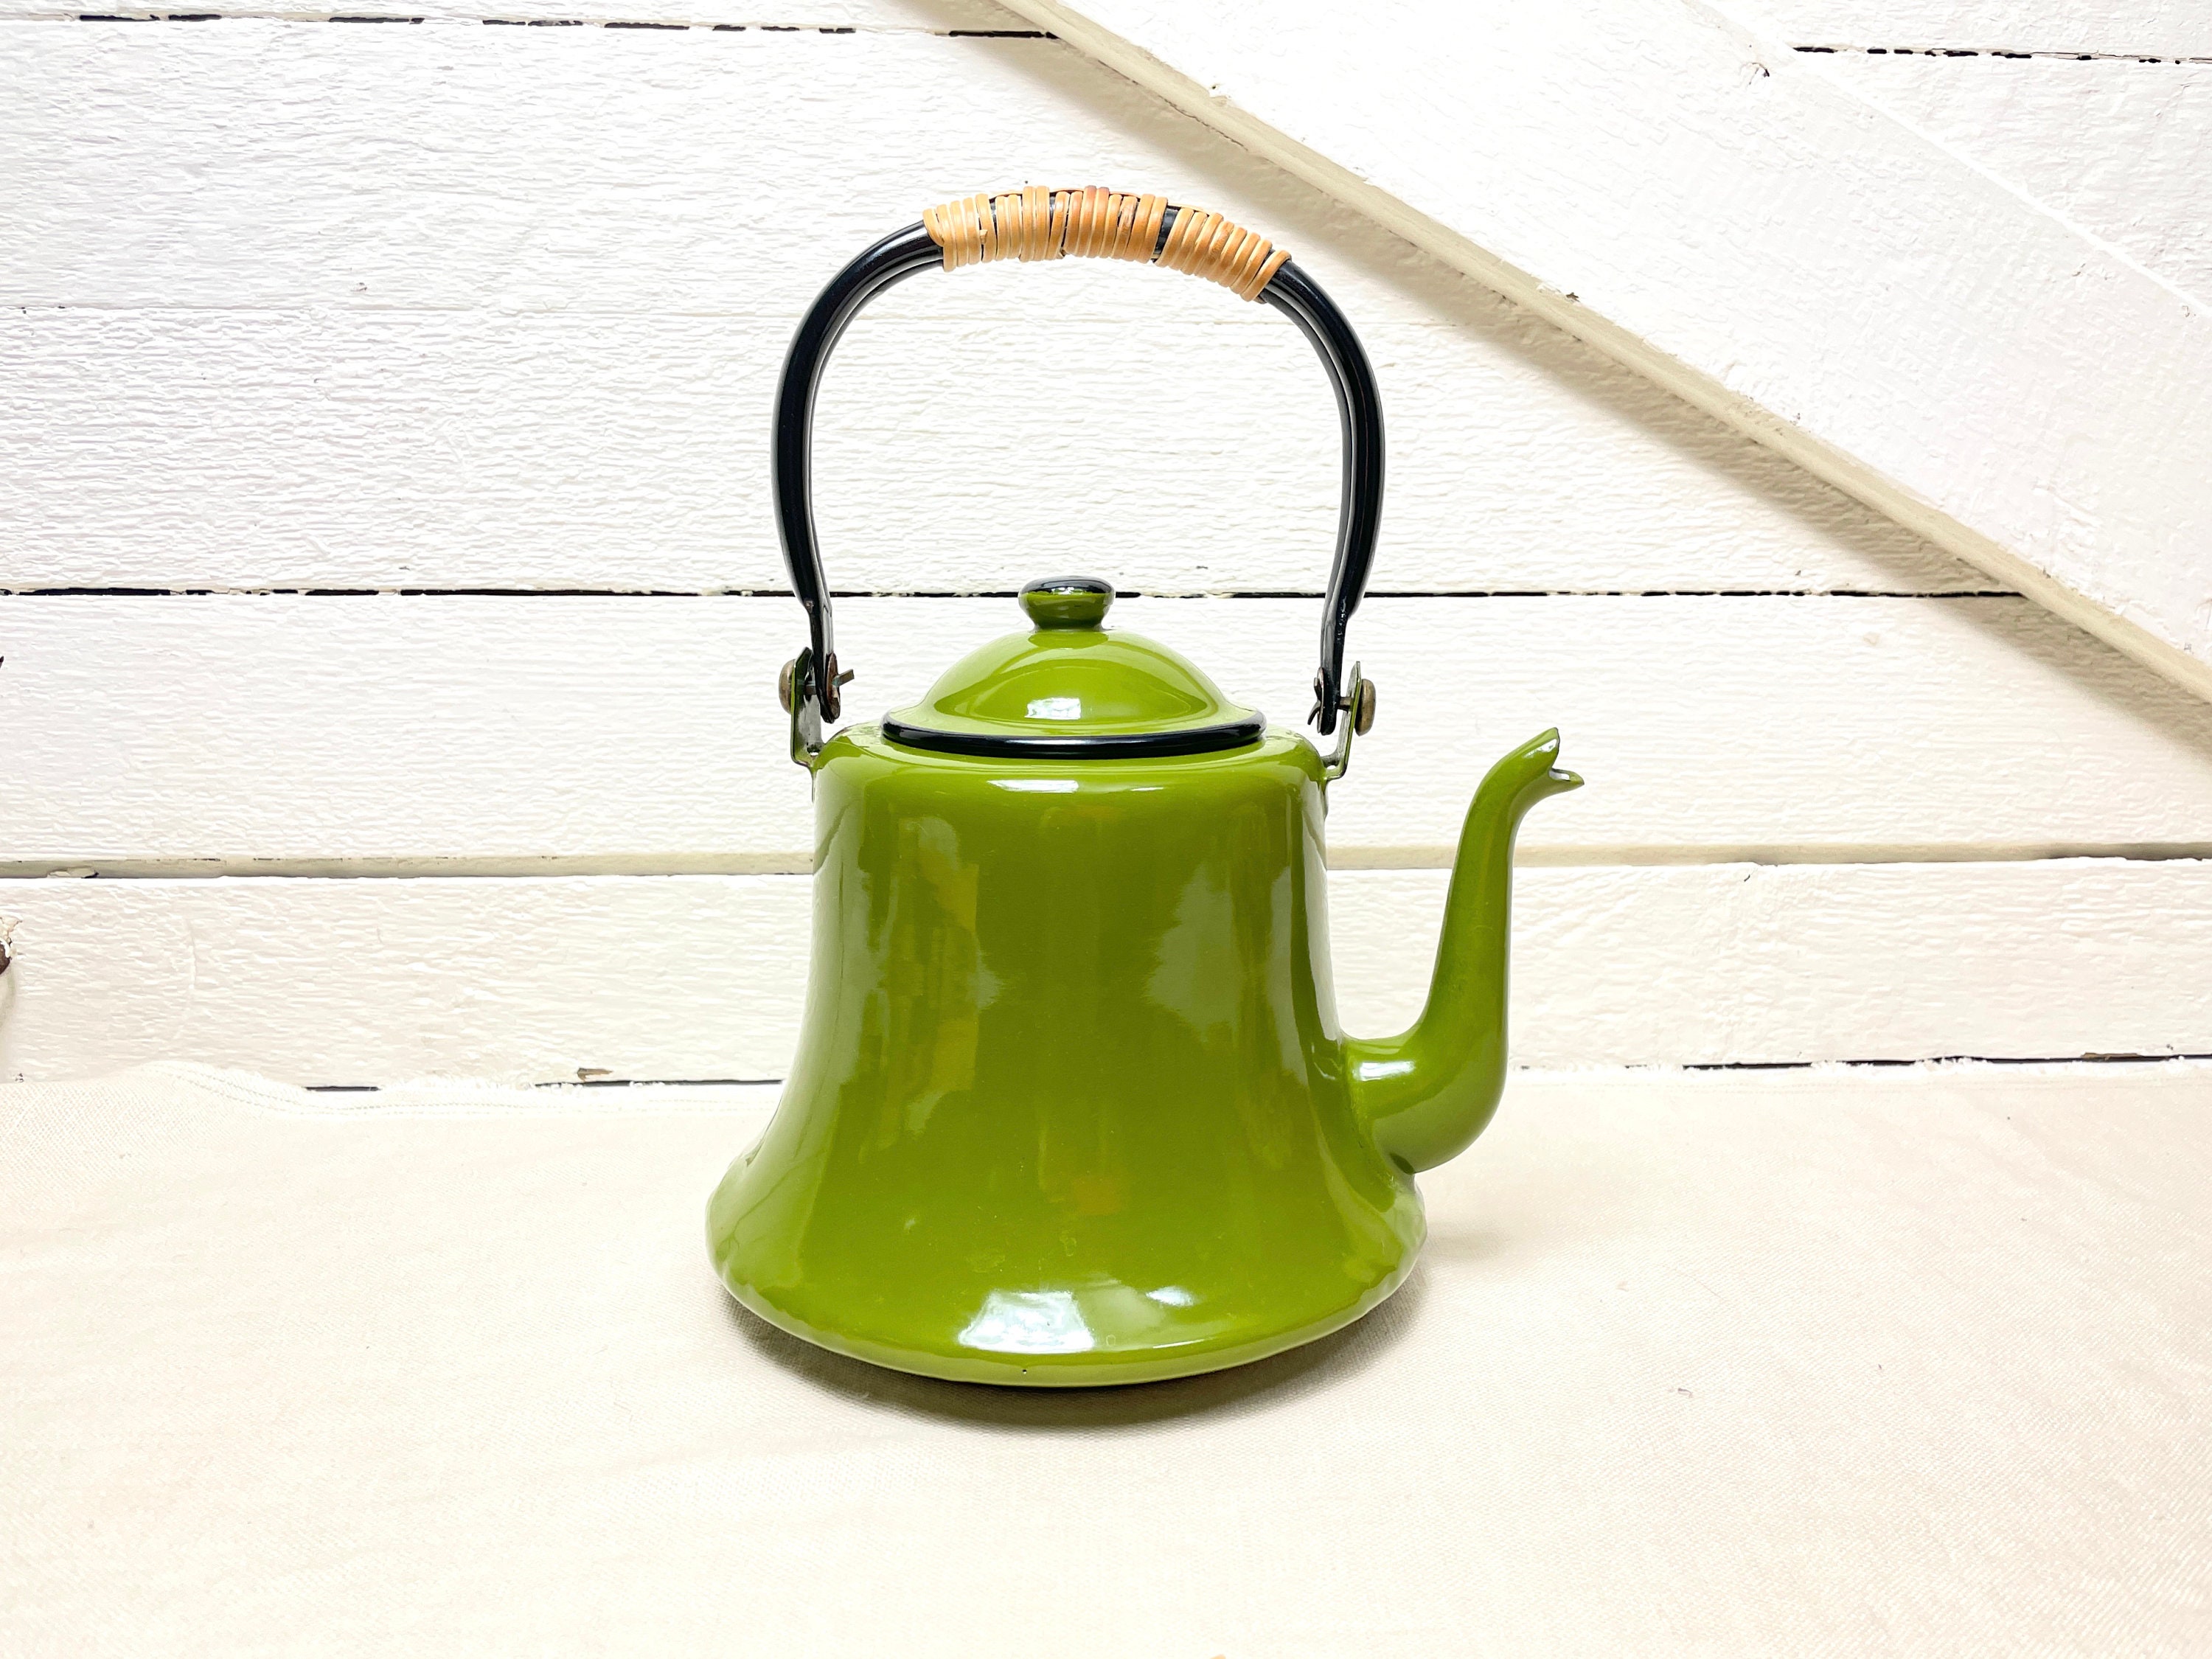 Olive Whistling Tea Kettle